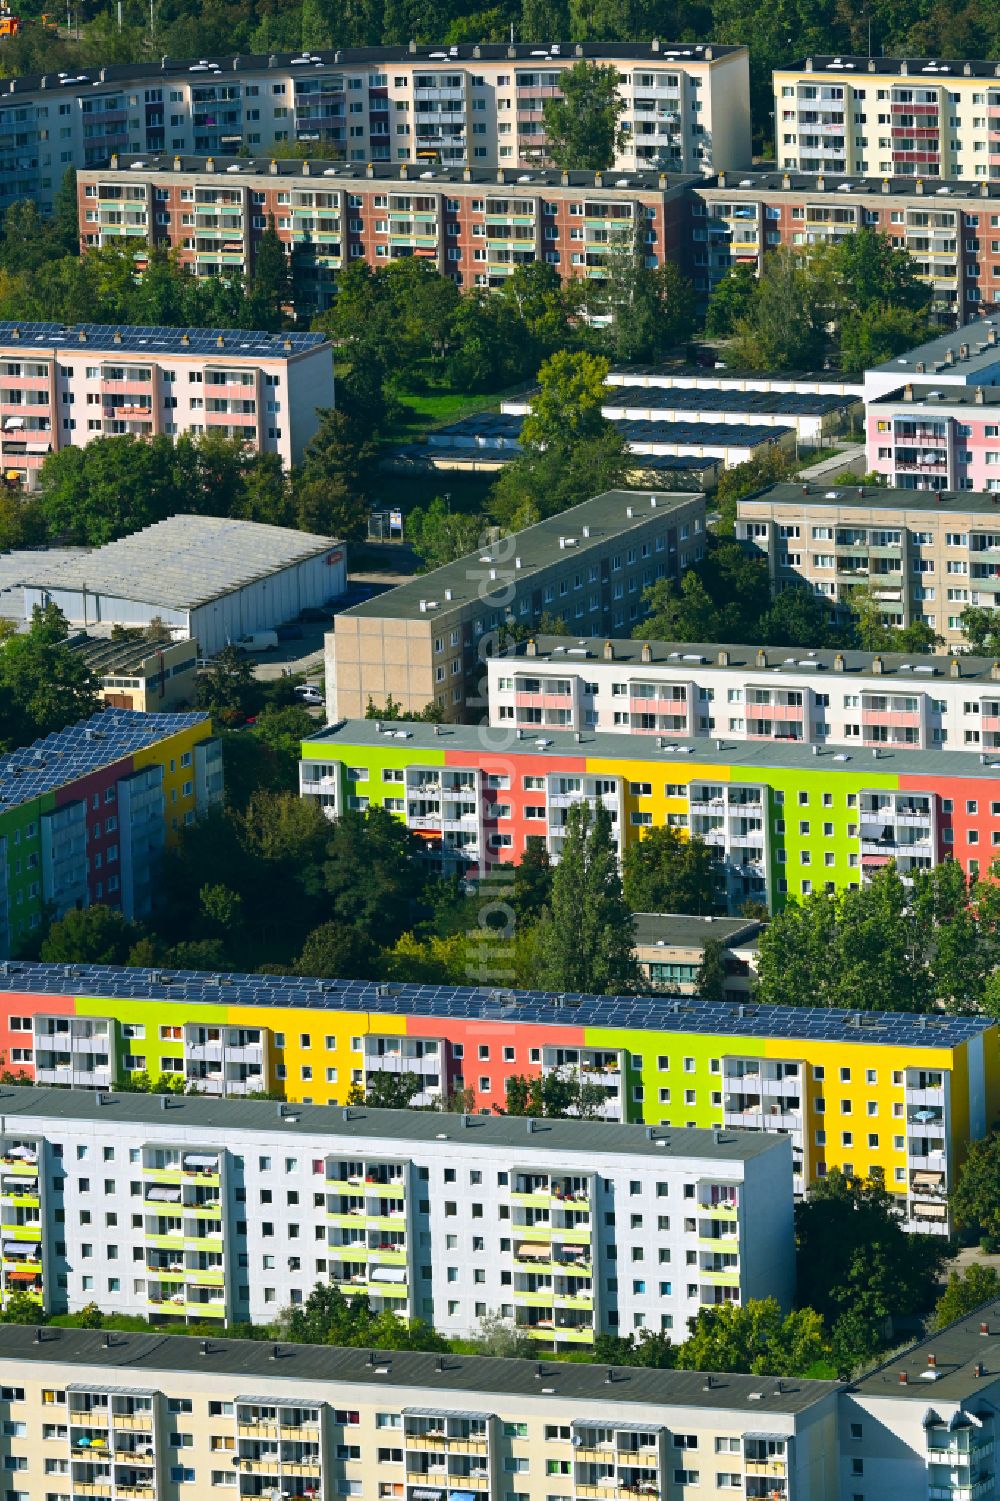 Luftbild Halle (Saale) - Plattenbau- Hochhaus- Wohnsiedlung im Ortsteil Silberhöhe in Halle (Saale) im Bundesland Sachsen-Anhalt, Deutschland